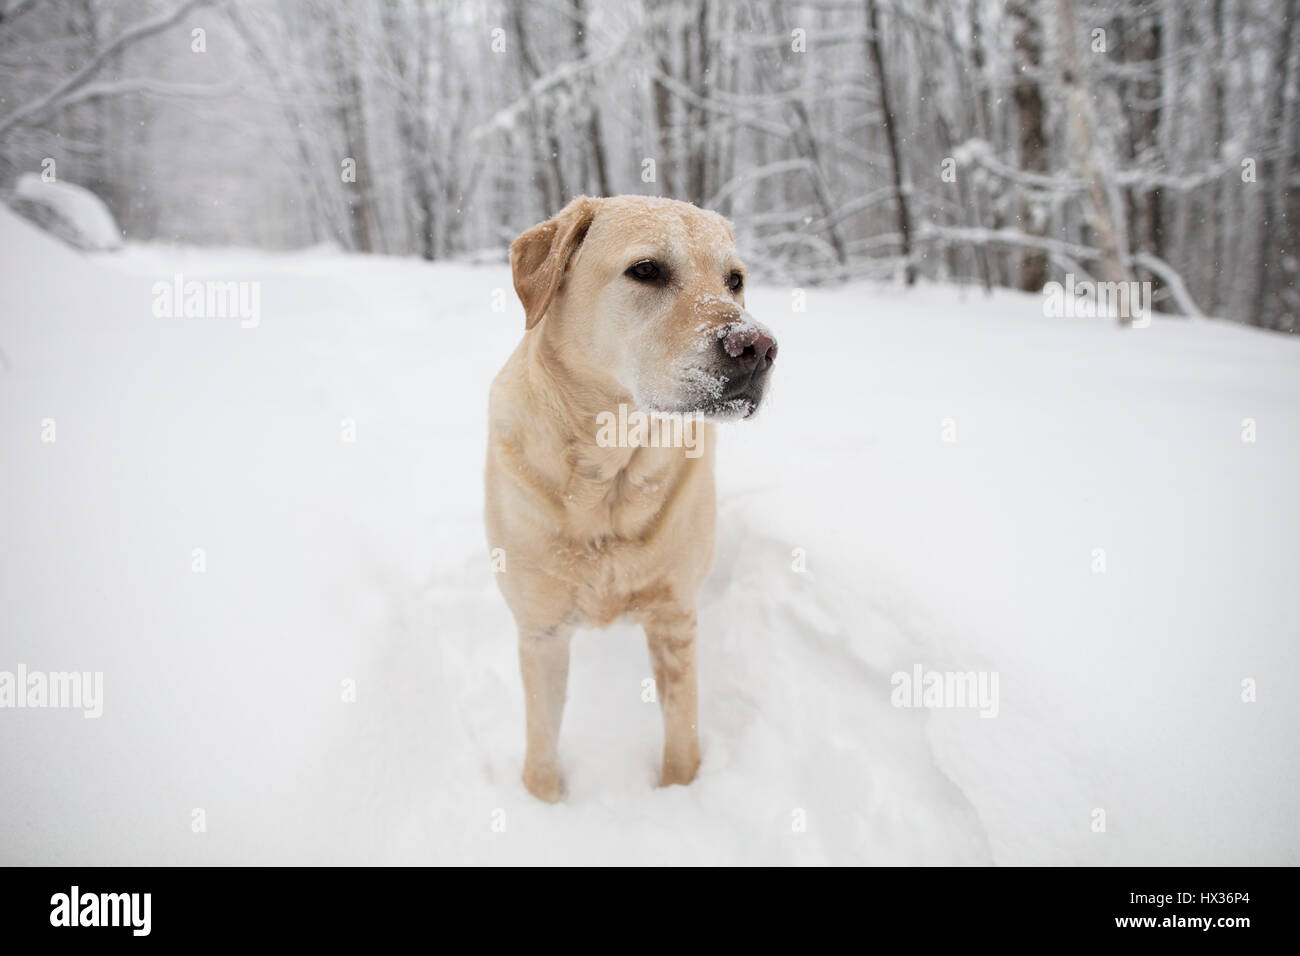 Un Labrador Retriever jaune (yellow lab) chien marche dans la neige au cours d'une tempête de neige dans la région de Hastings Highlands, Ontario, Canada. Banque D'Images